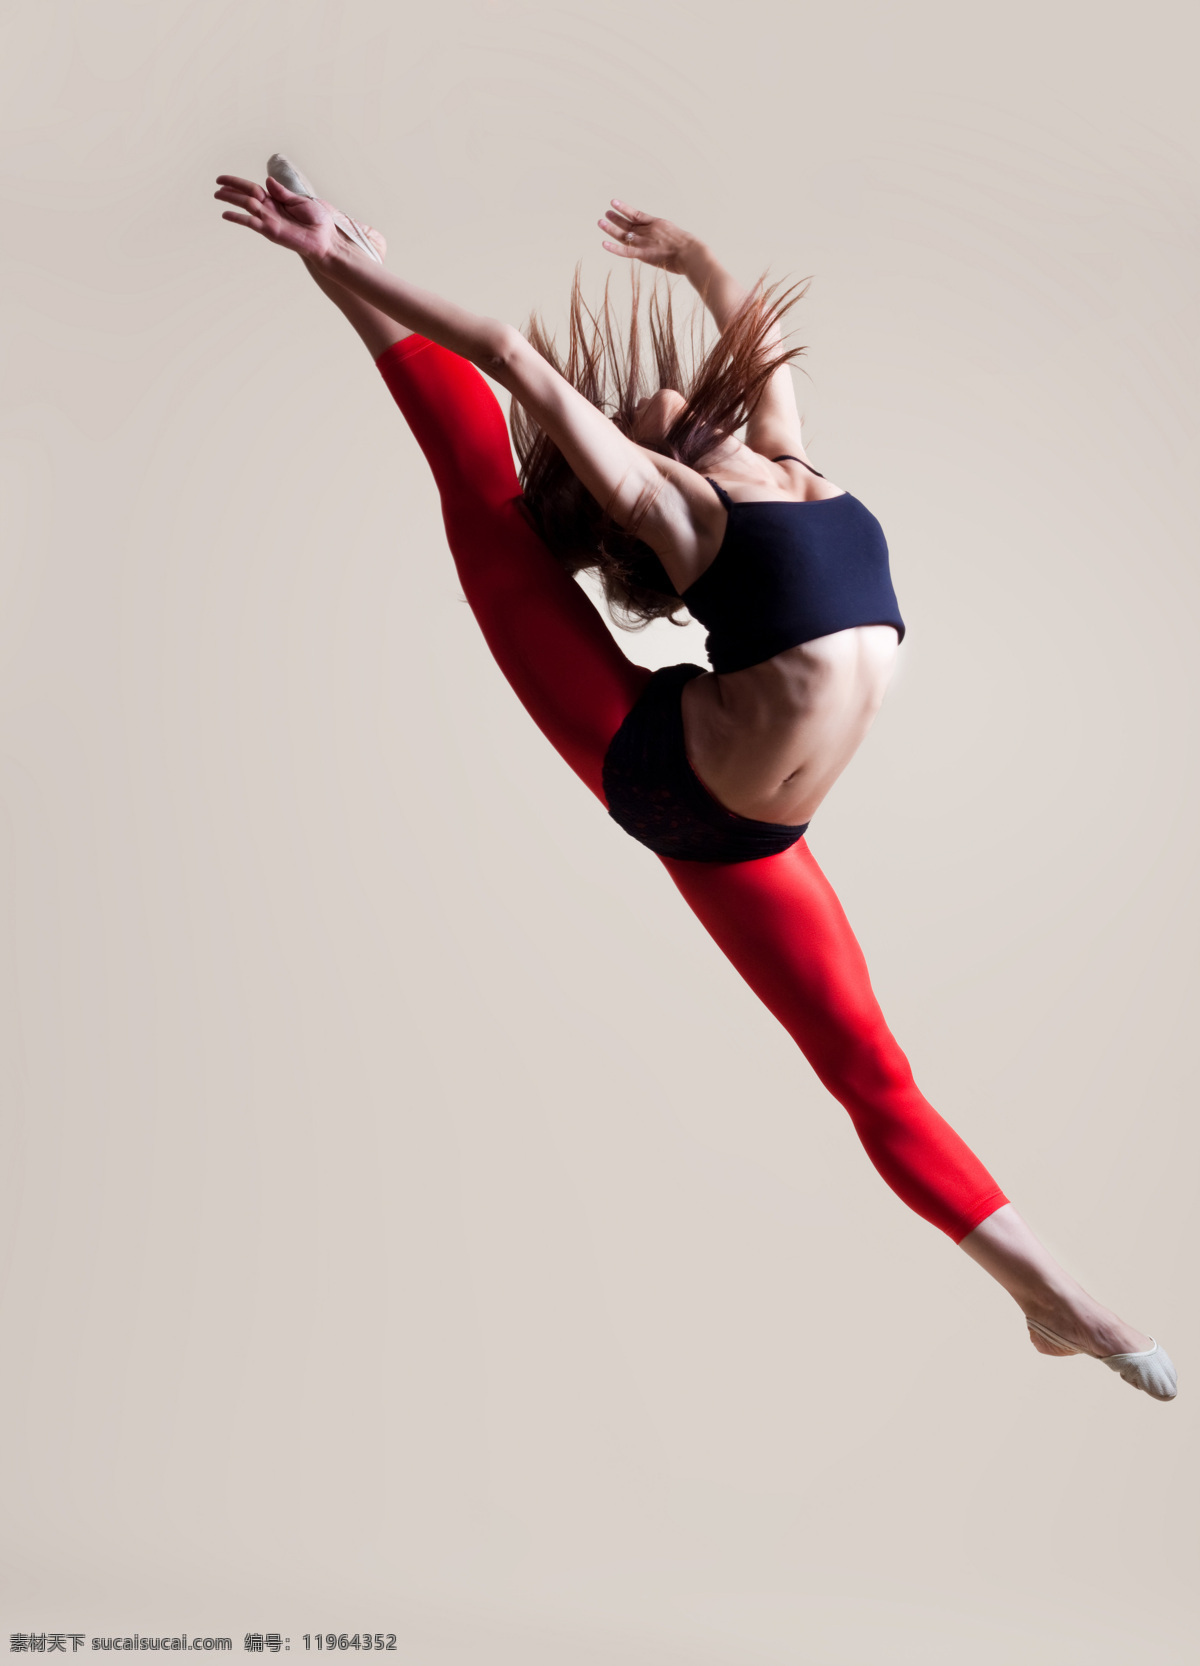 舞蹈 女孩 跳跃 活动 外国美女 身姿 设计素材 芭蕾舞蹈 美女图片 人物图片